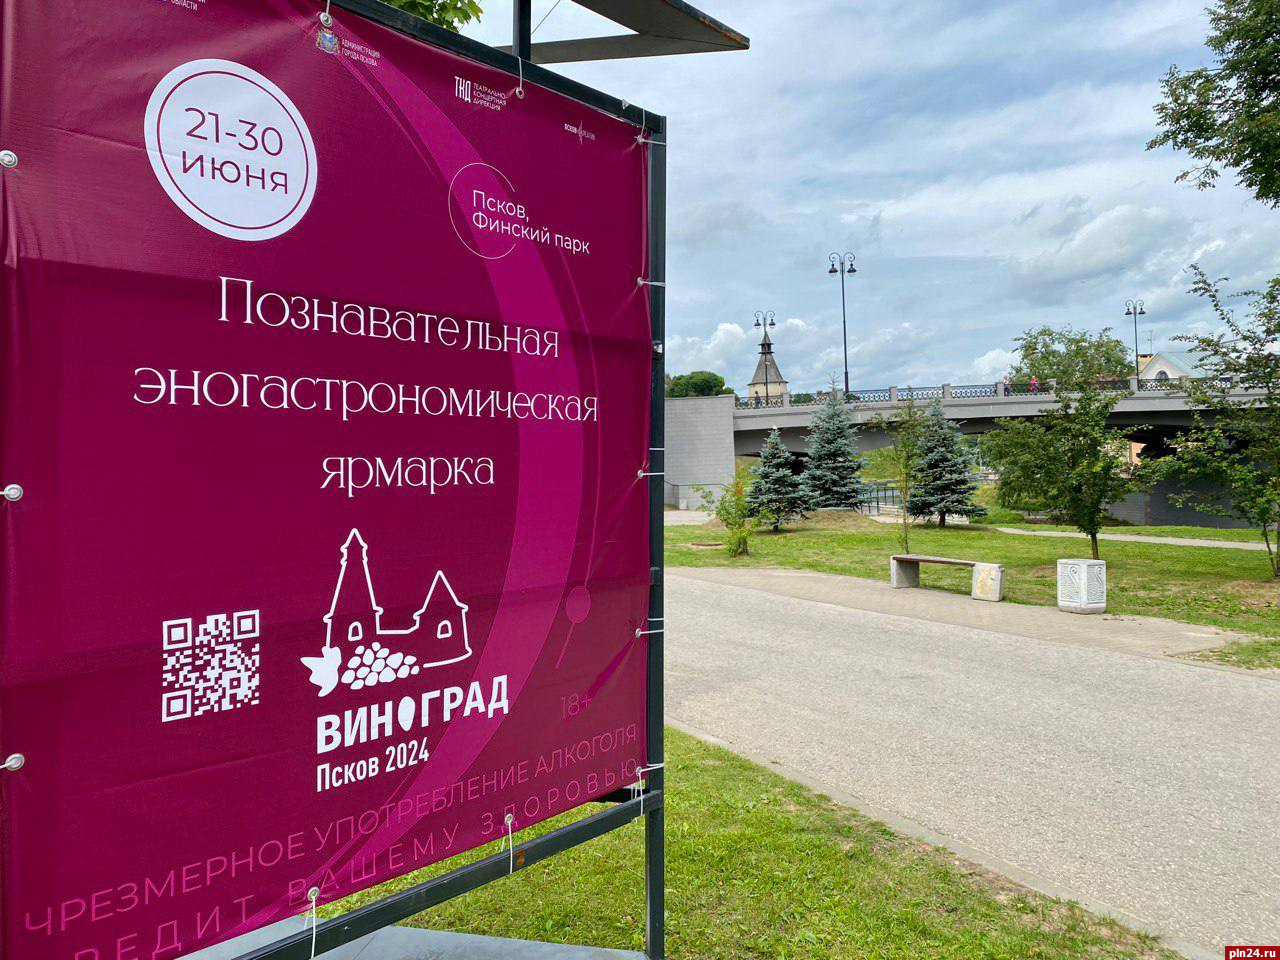 Площадку для эногастрономической ярмарки «Виноград» готовят в Пскове